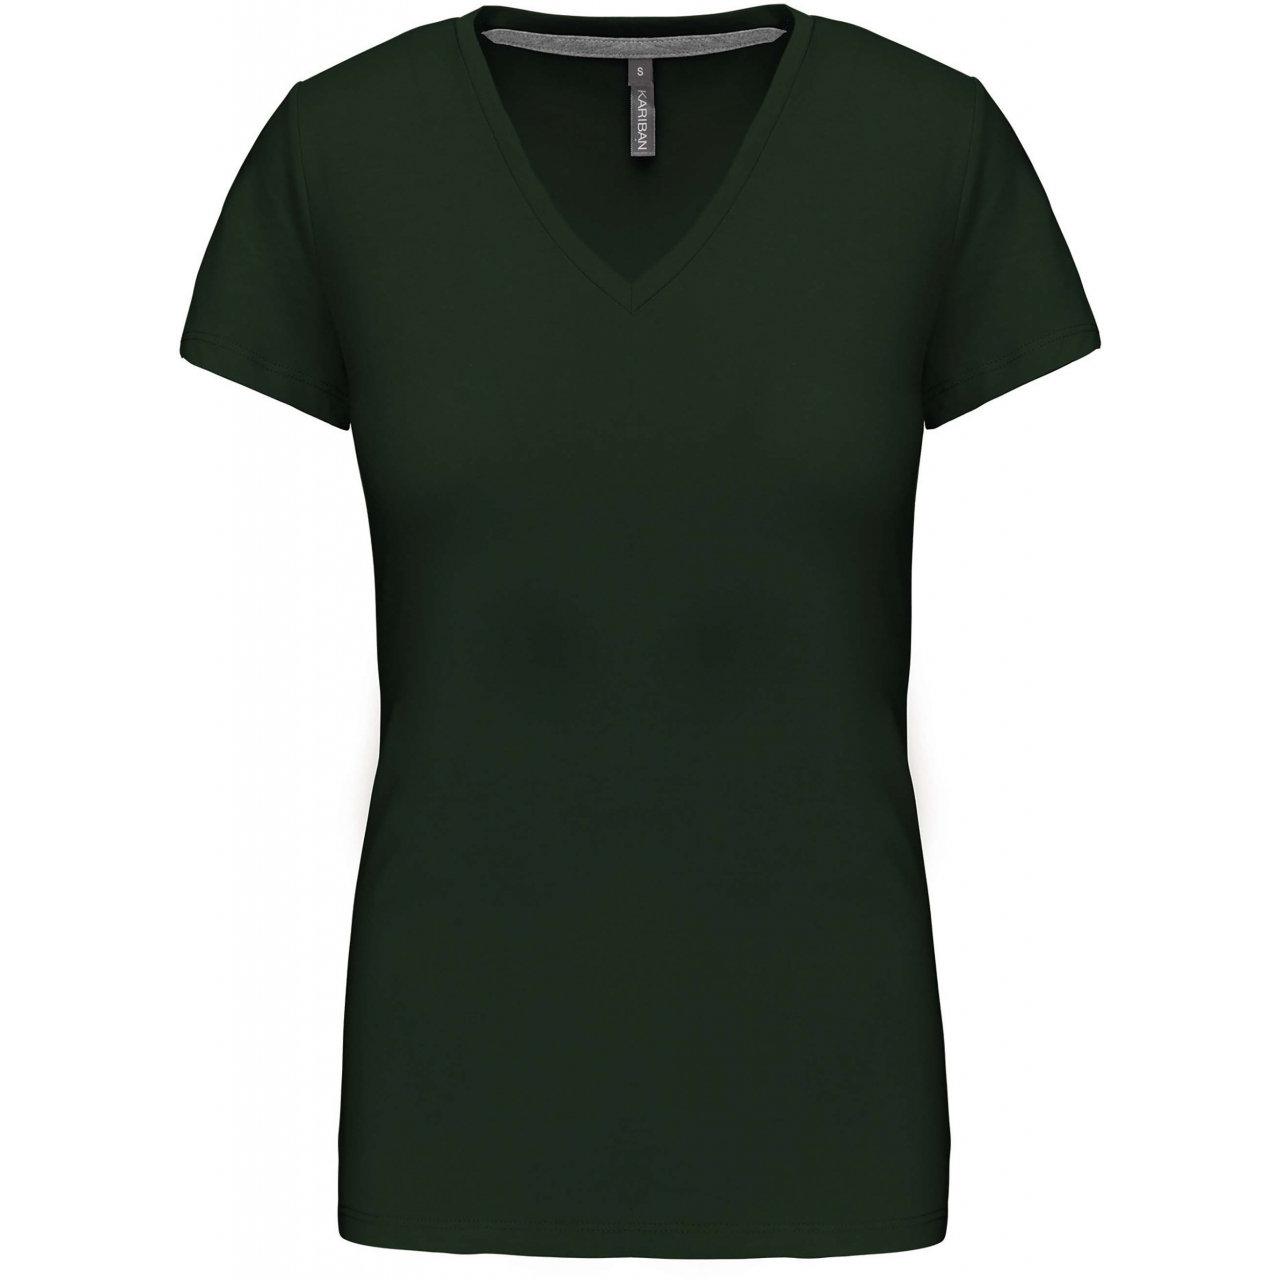 Dámské tričko Kariban V-neck s krátkým rukávem - tmavě zelené, S